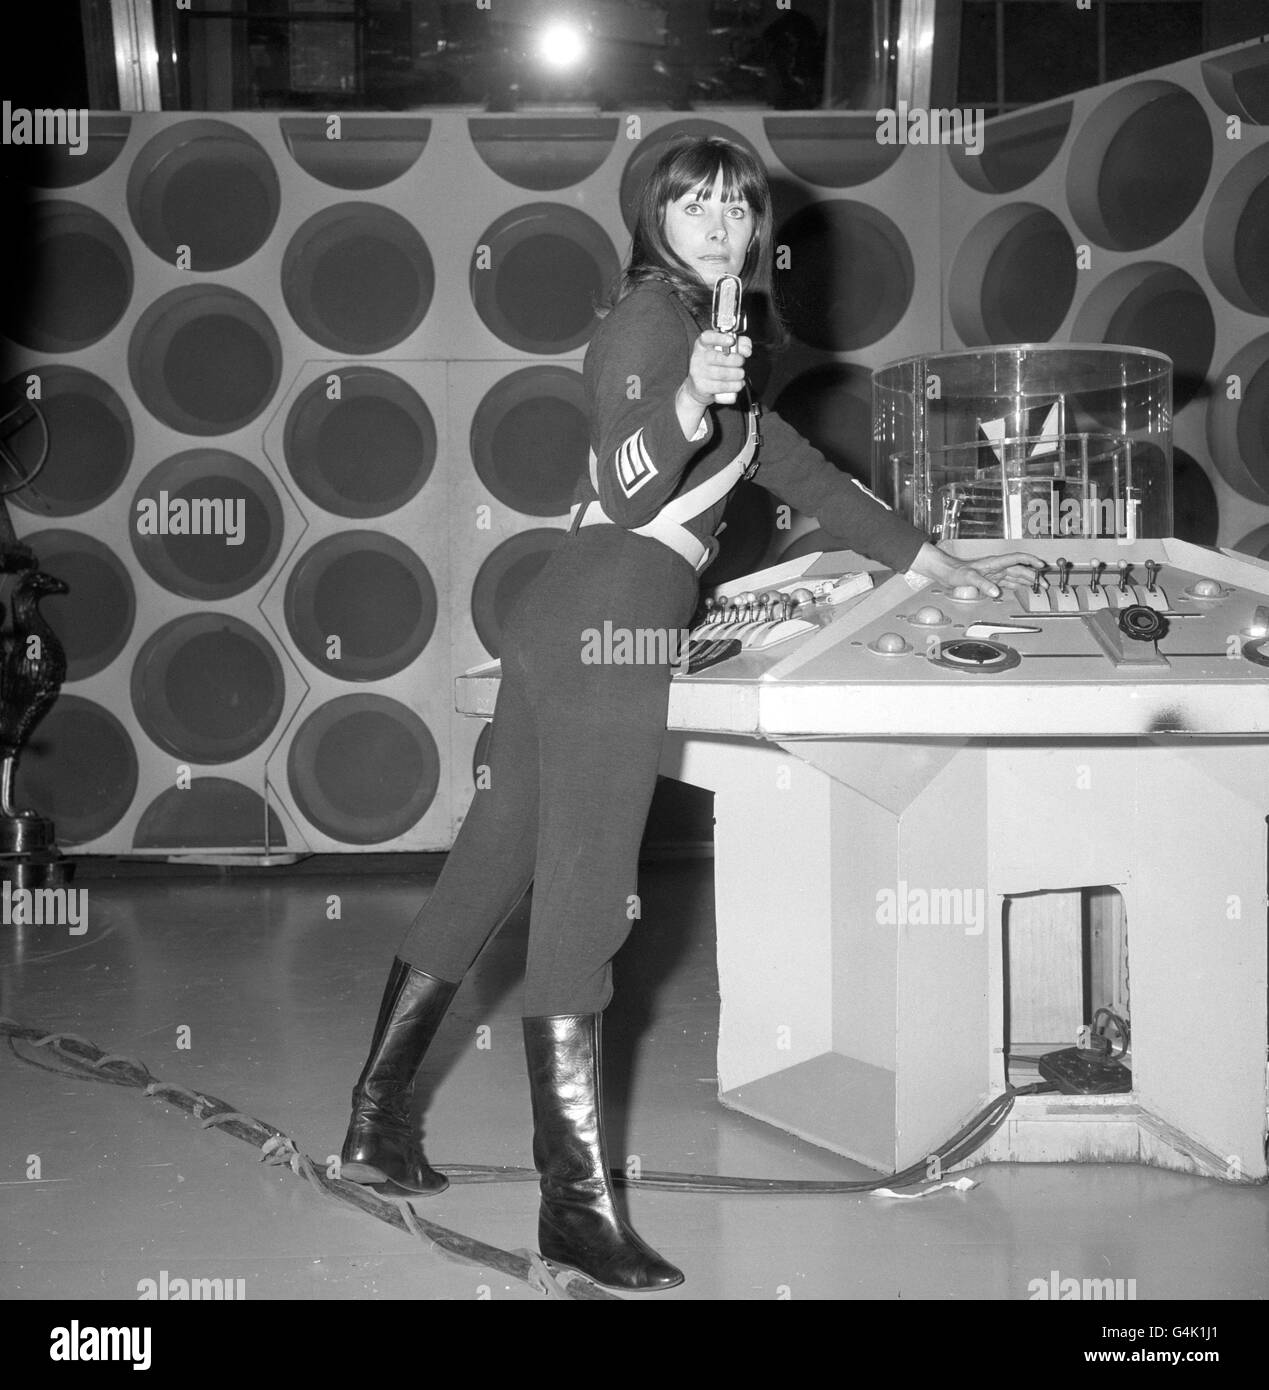 Télévision - BBC Series - Dr Who.L'actrice Jean Marsh répète un épisode du Dr Who, en tant que compagne Sara Kingdom Banque D'Images